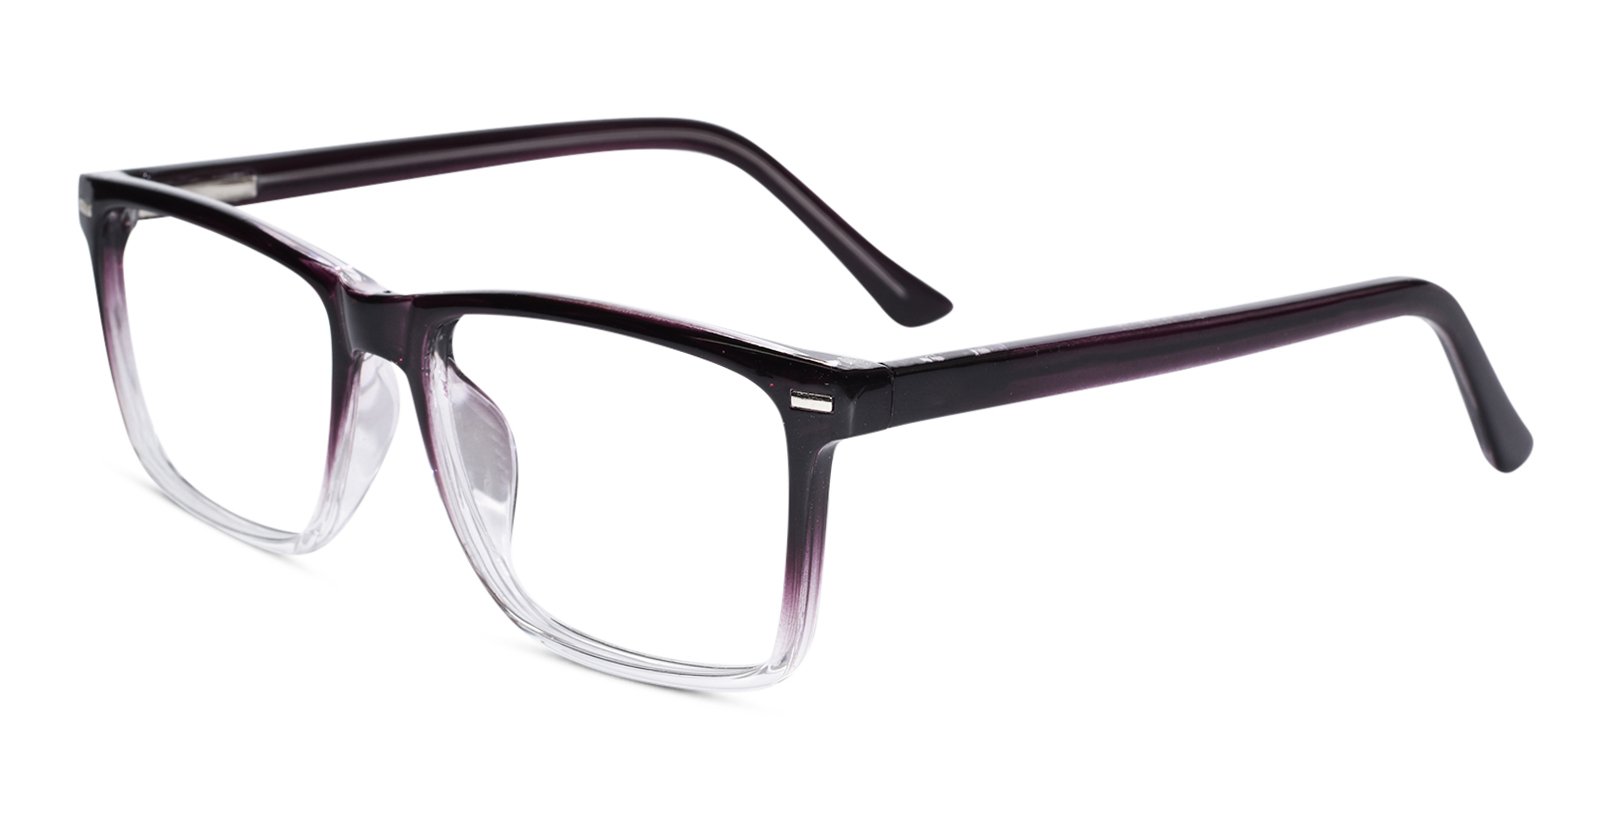 Brown Rectangular Eyeglasses for Men & Women